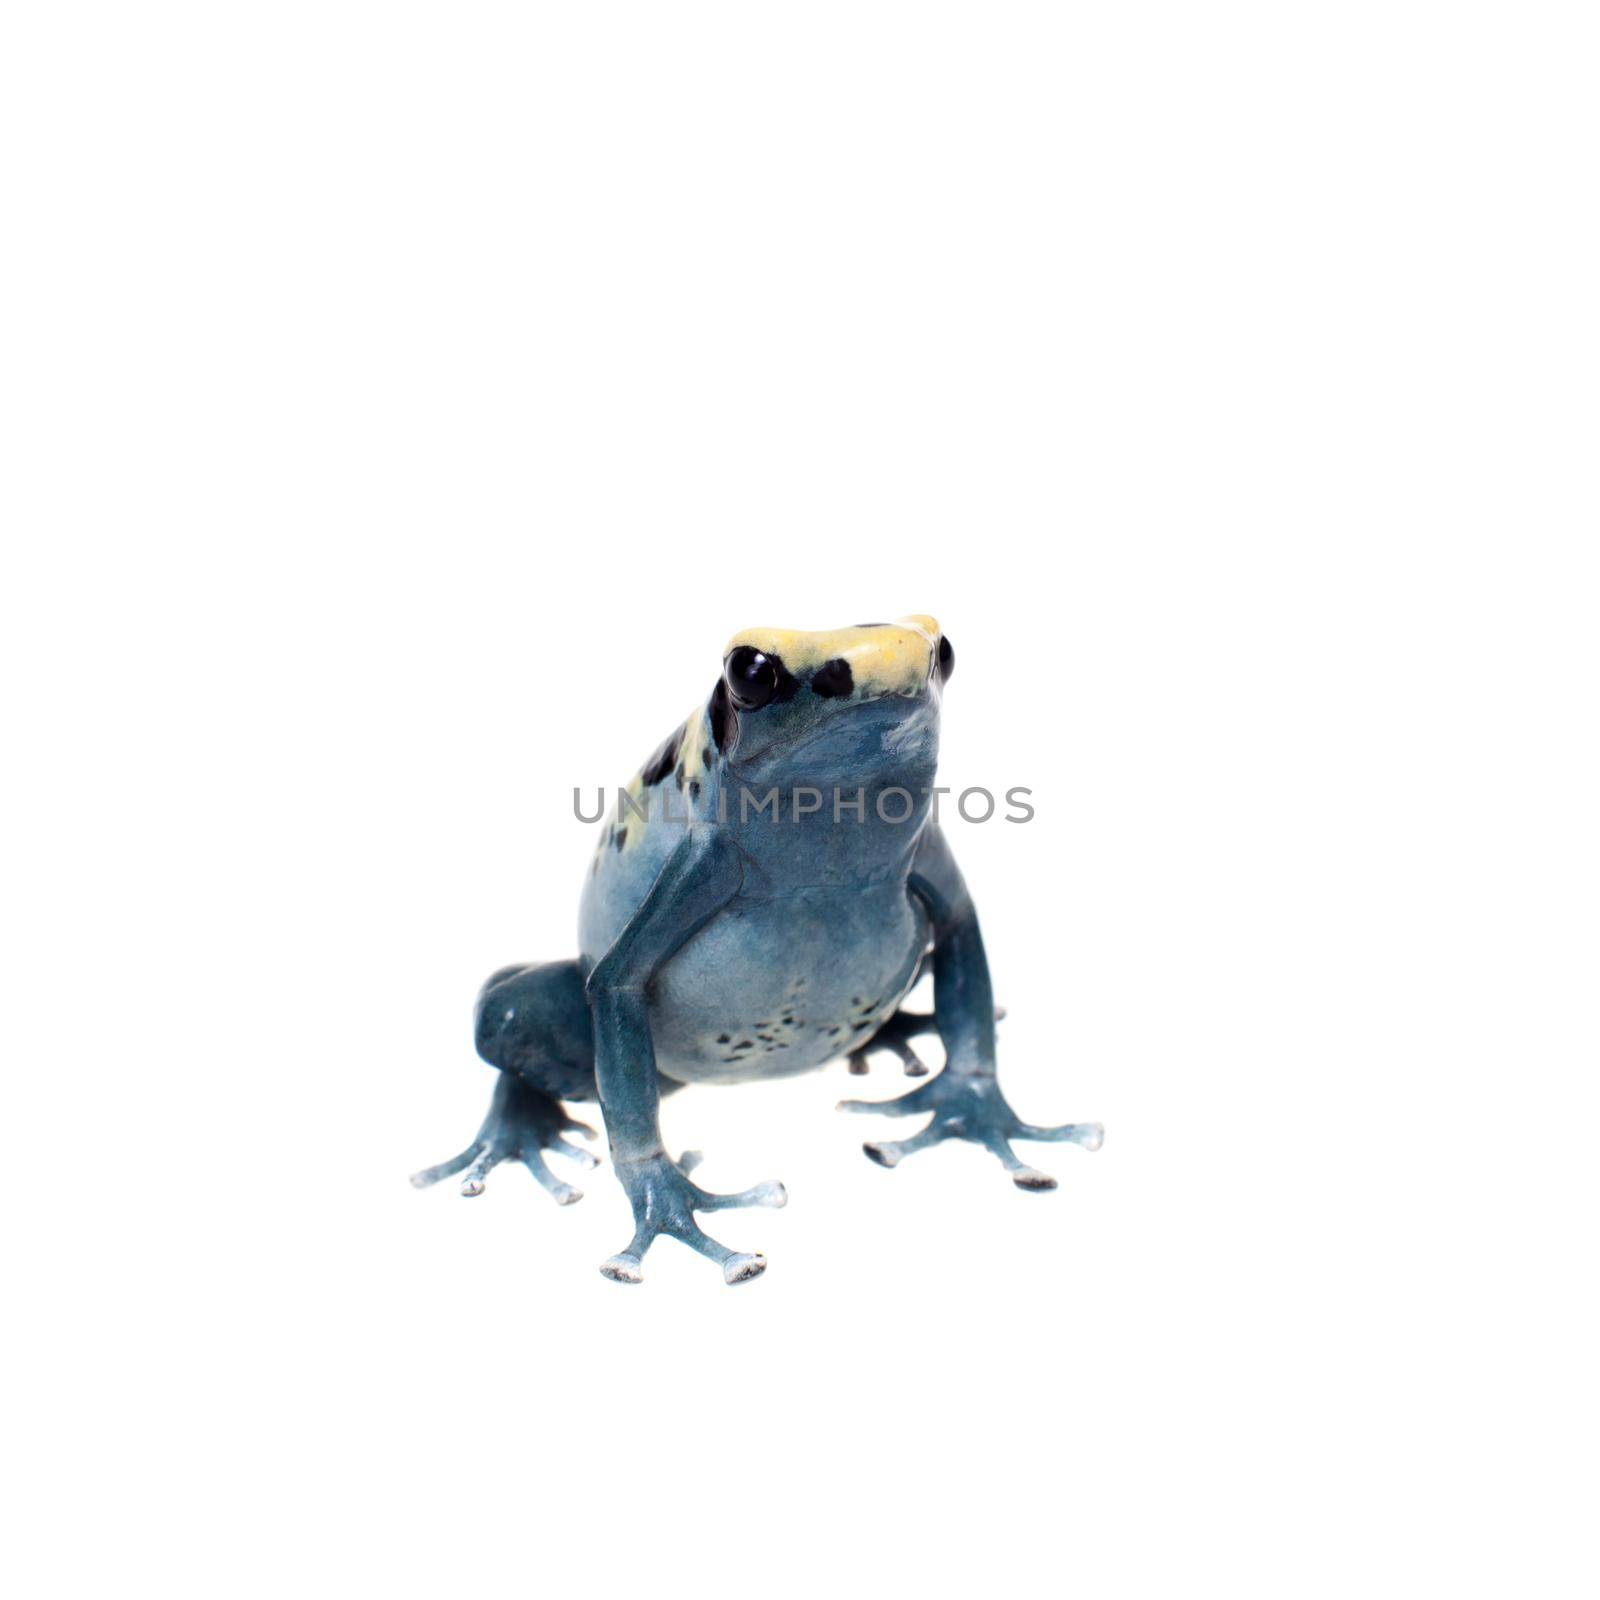 Patricia Dyeing Poison Dart Frog, Dendrobates tinctorius, on white by RosaJay